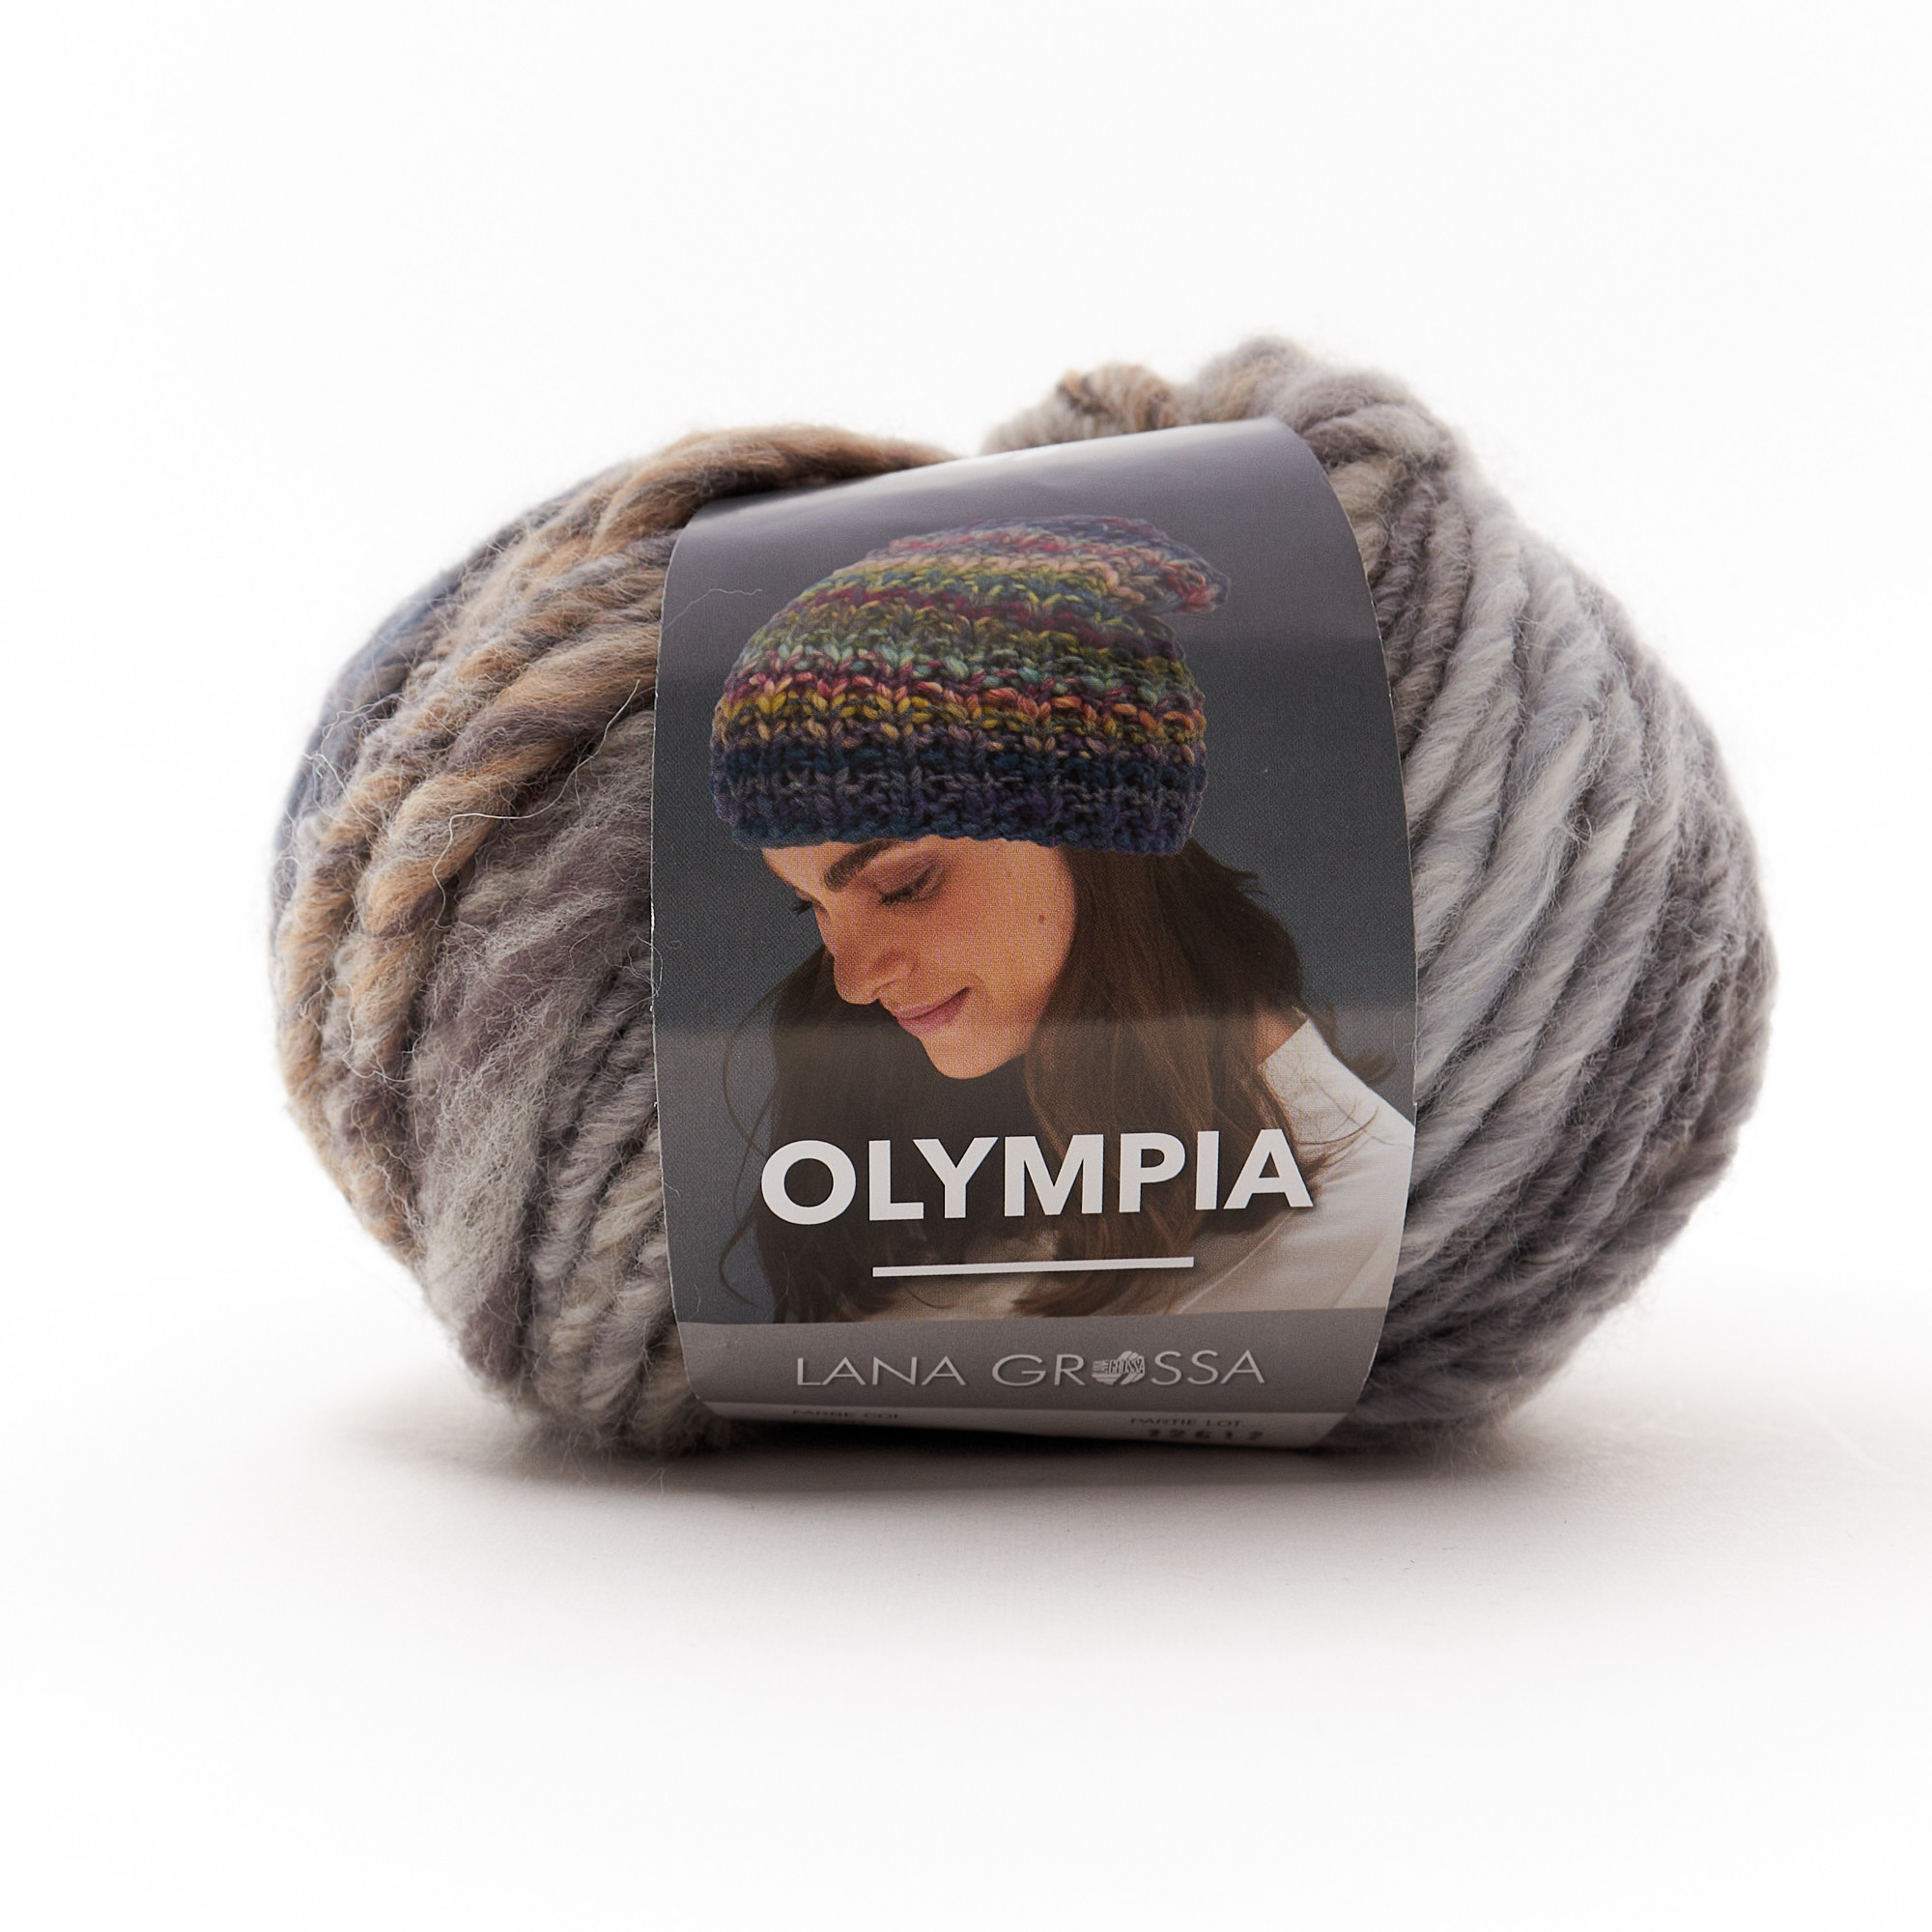 Olympia - filato sfumato misto lana by Lana Grossa